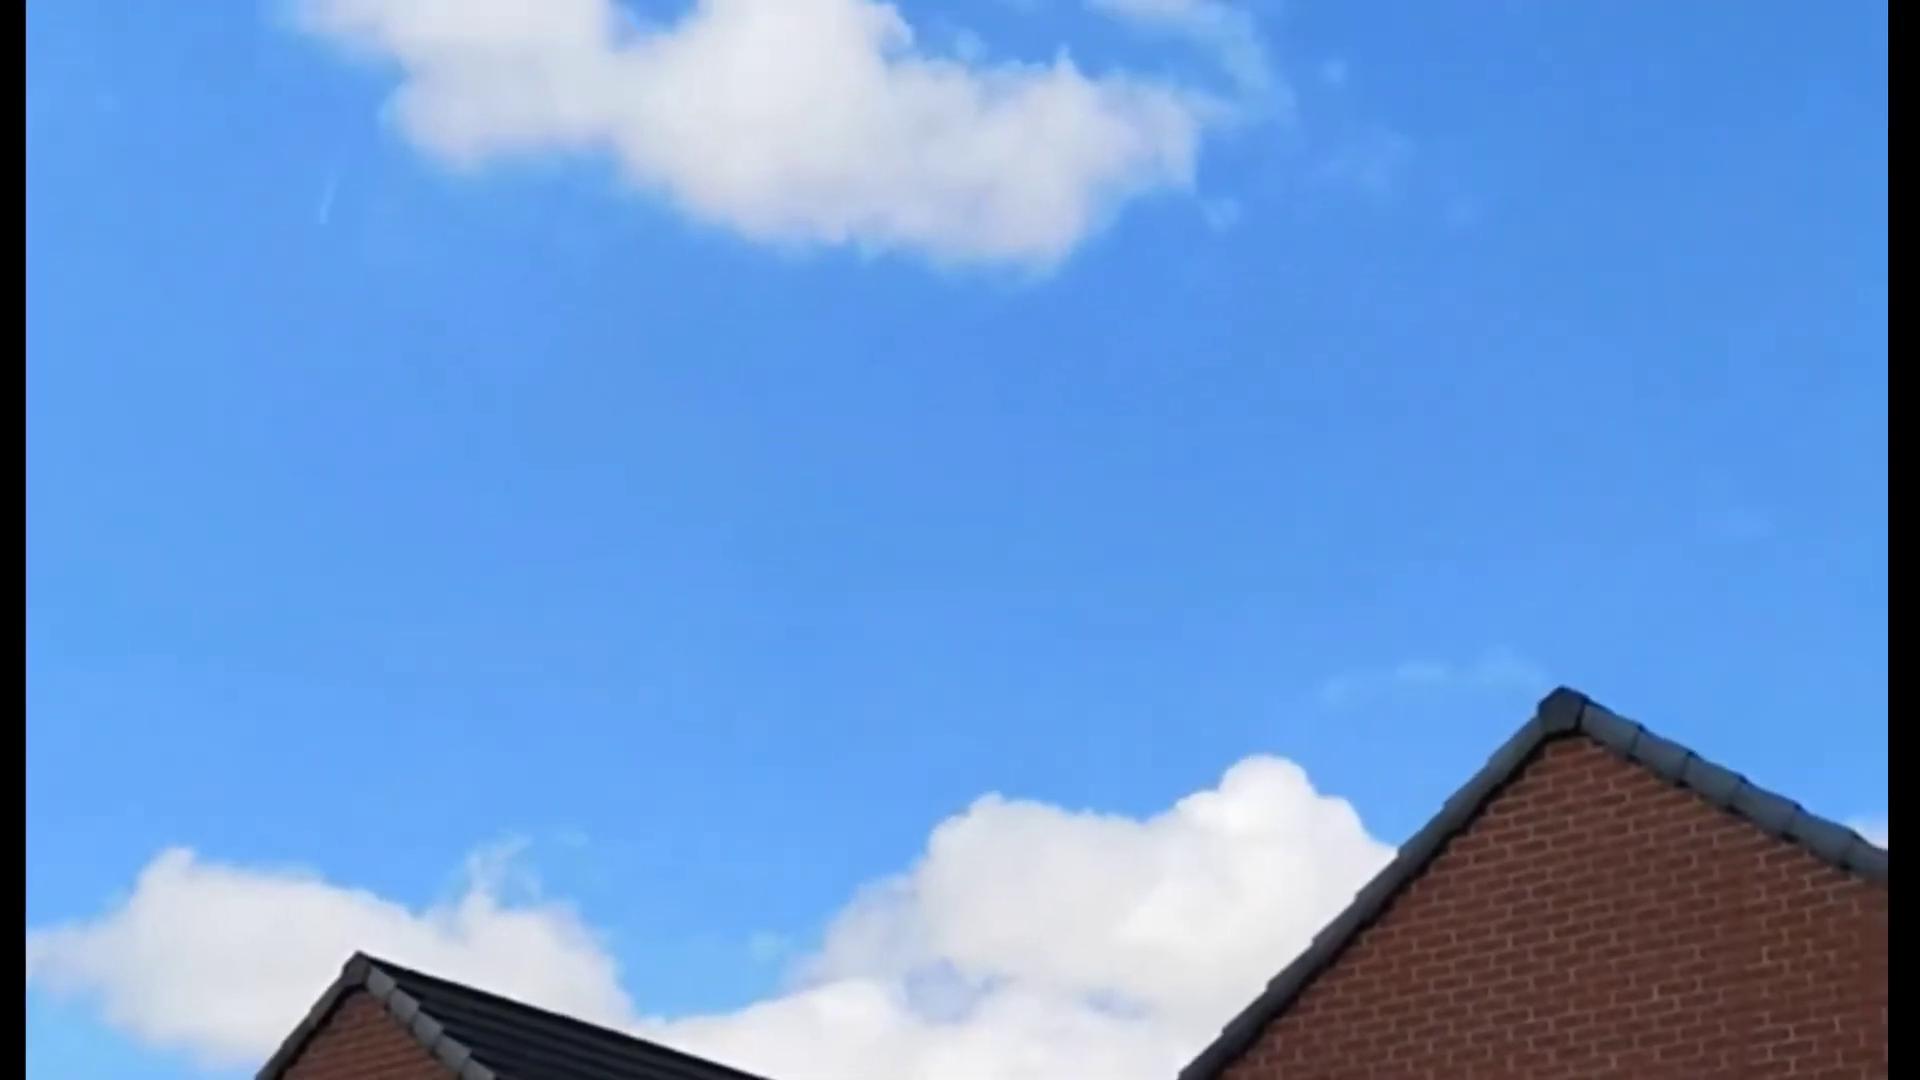 21-02-2020 Weird object flying over Walkden. Manchester.UK